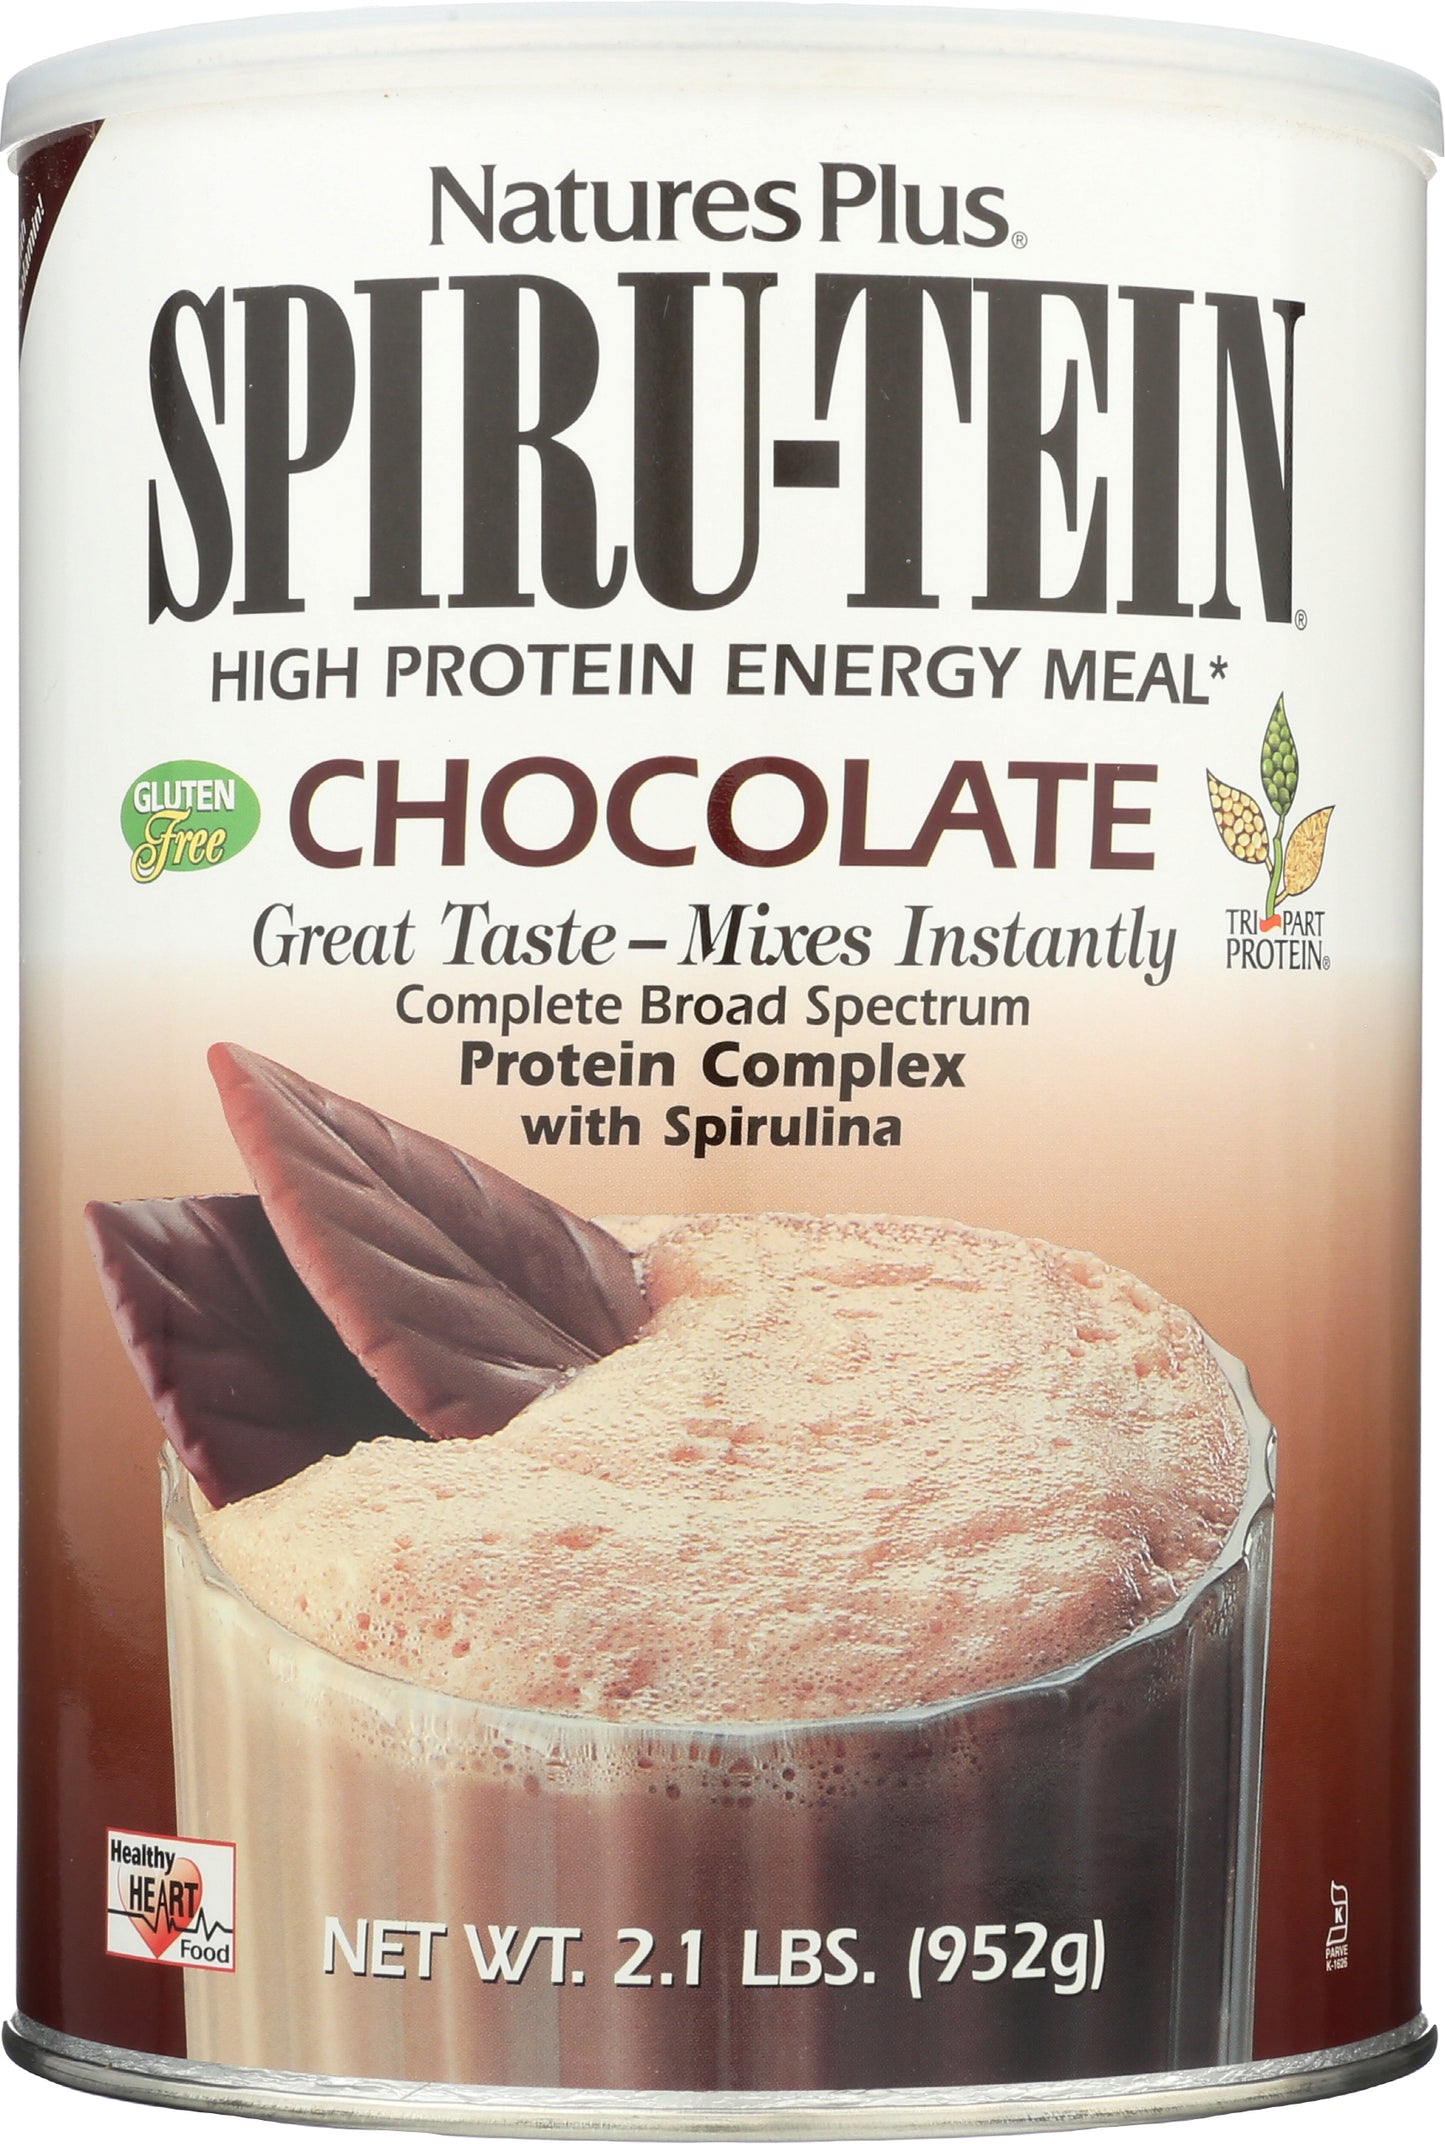 NaturesPlus Spiru-tein Chocolate Protein Powder 952g Front of Can